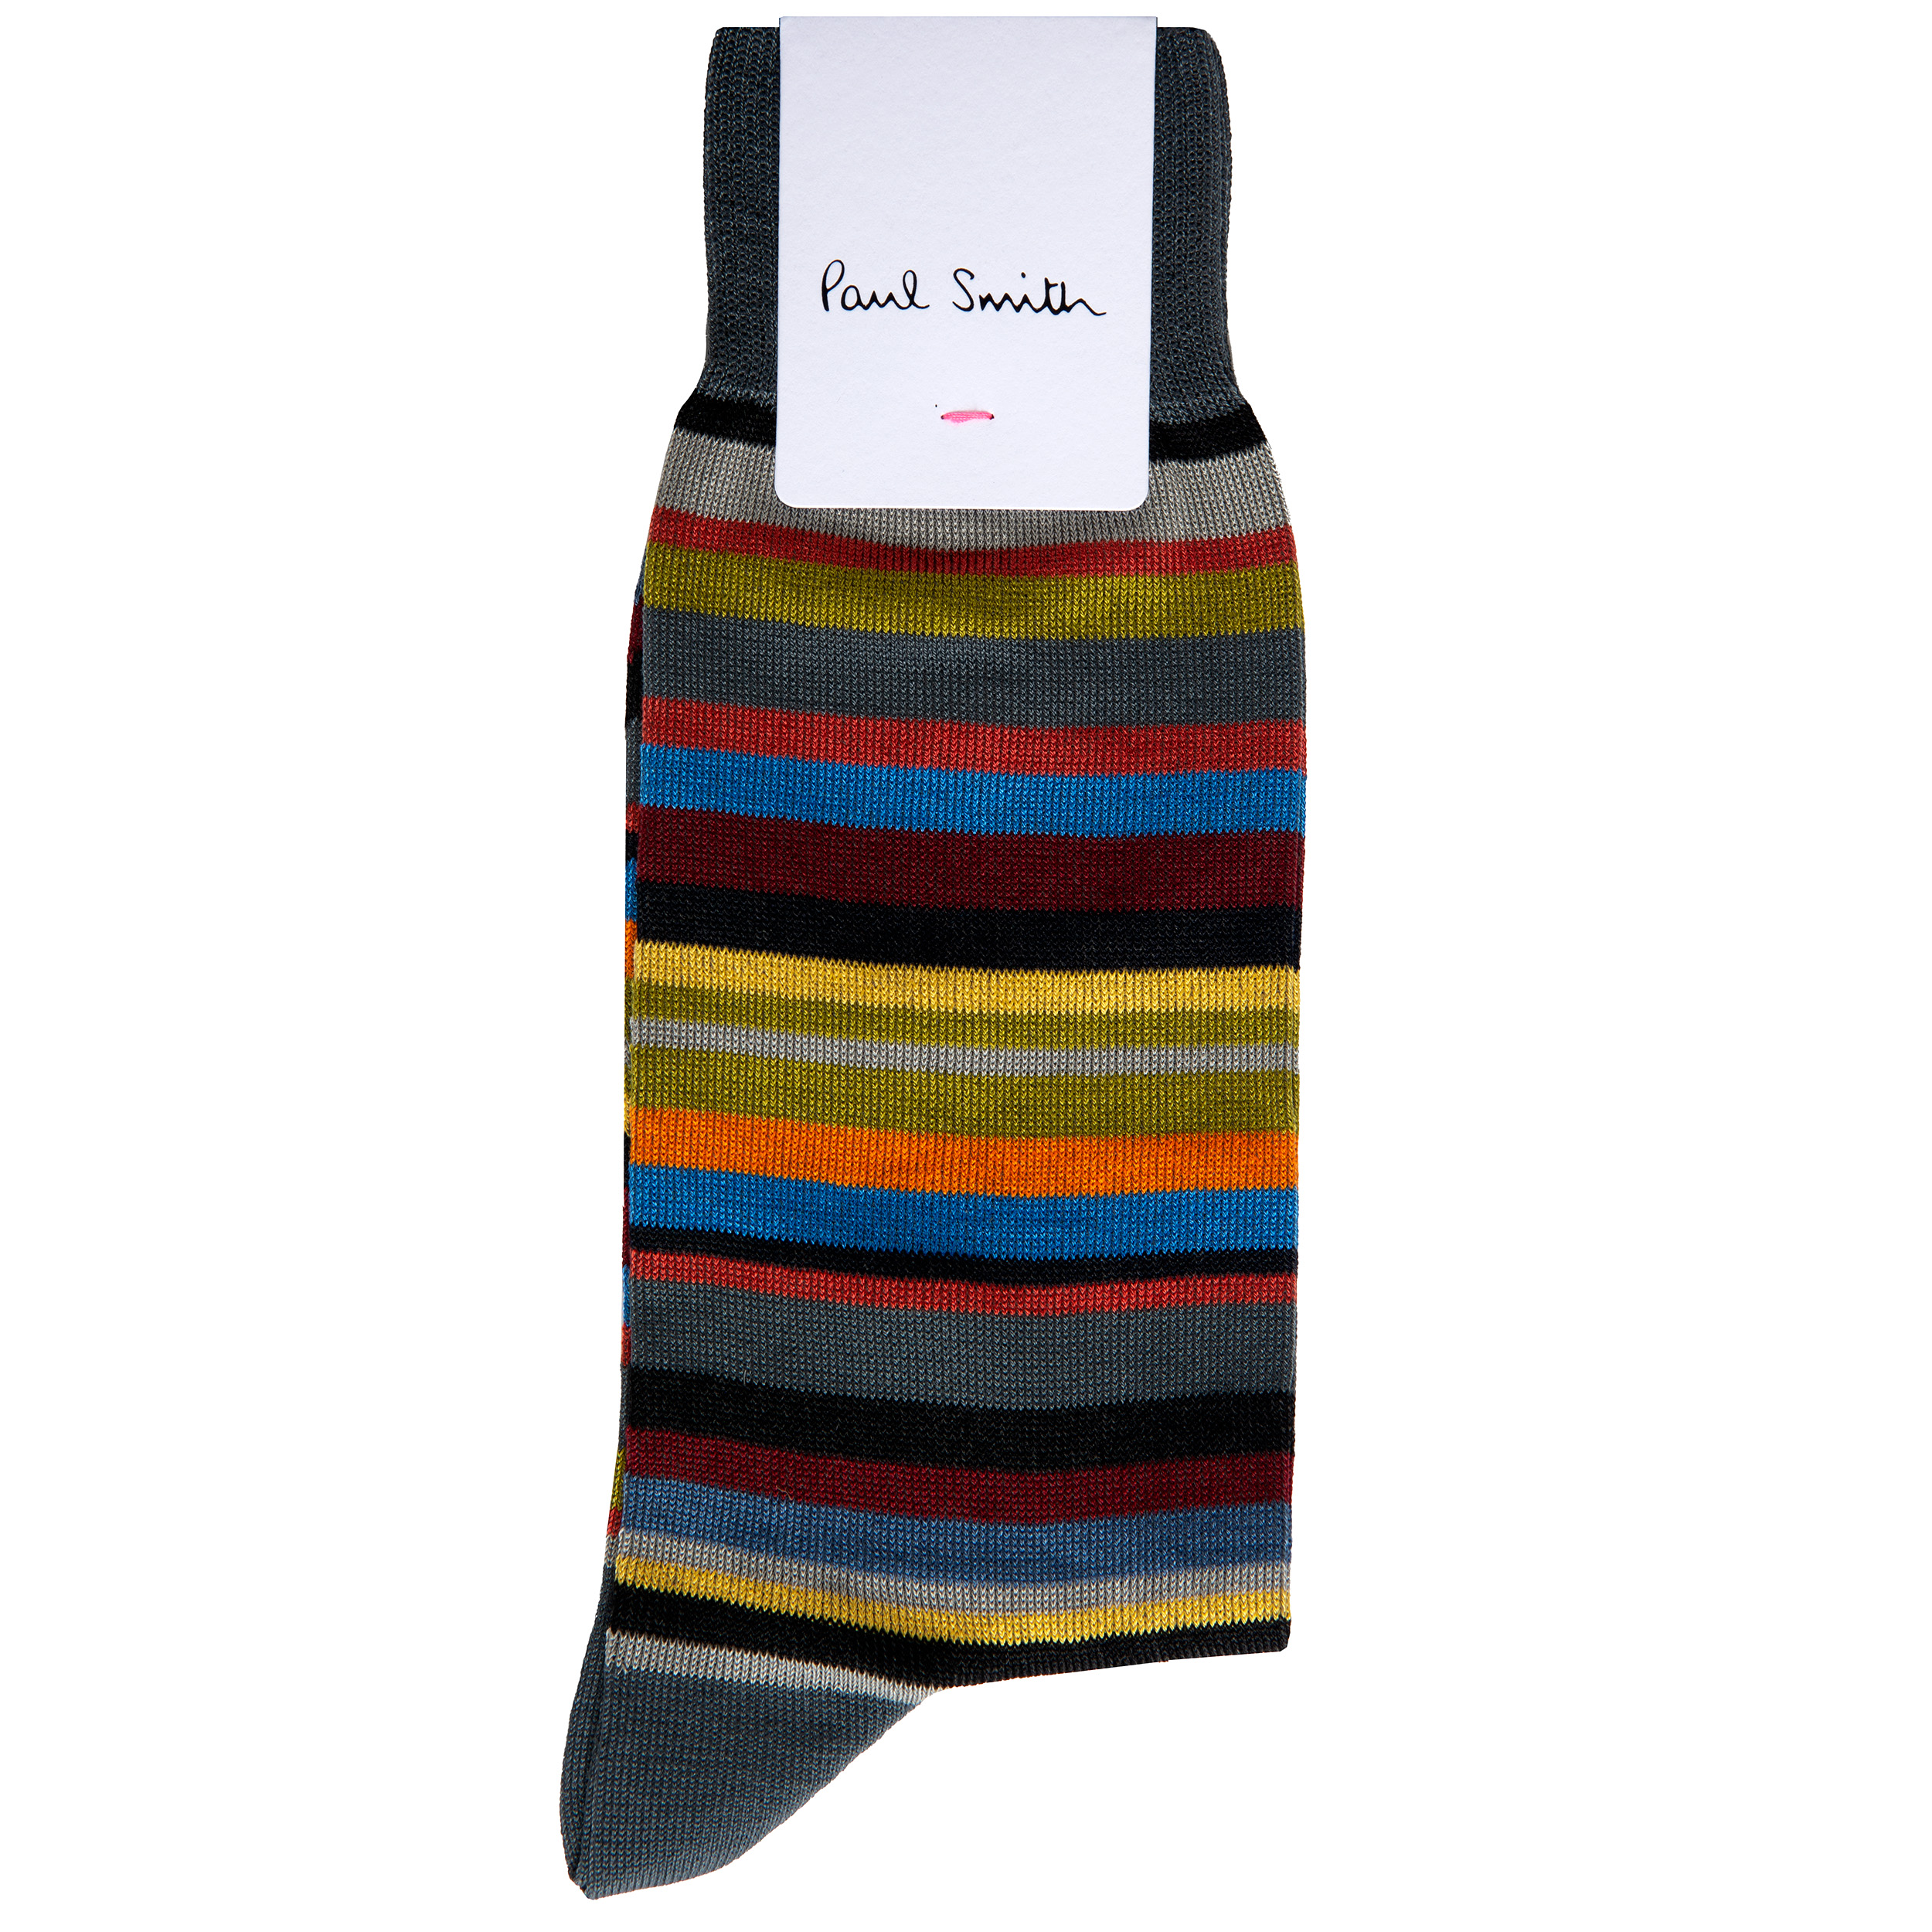 Paul Smith Aldgate Stripe Socks Slate/Multi